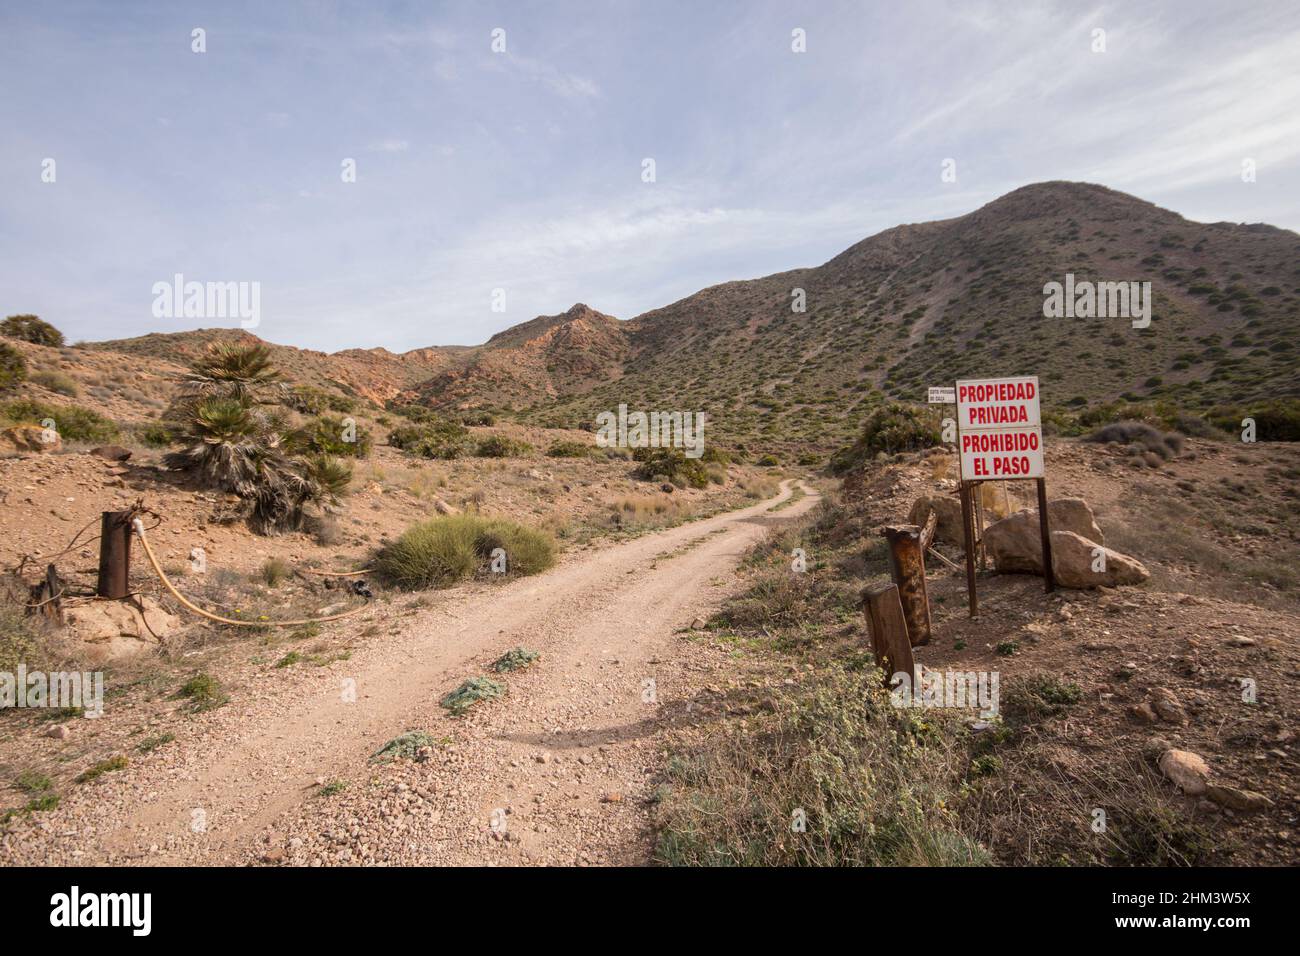 Schotterstraße, Halbwüstenlandschaft des Naturschutzgebietes Cabo de gata. Ohne Einfahrtsschild. Almeria, Andalusien, Südspanien. Stockfoto